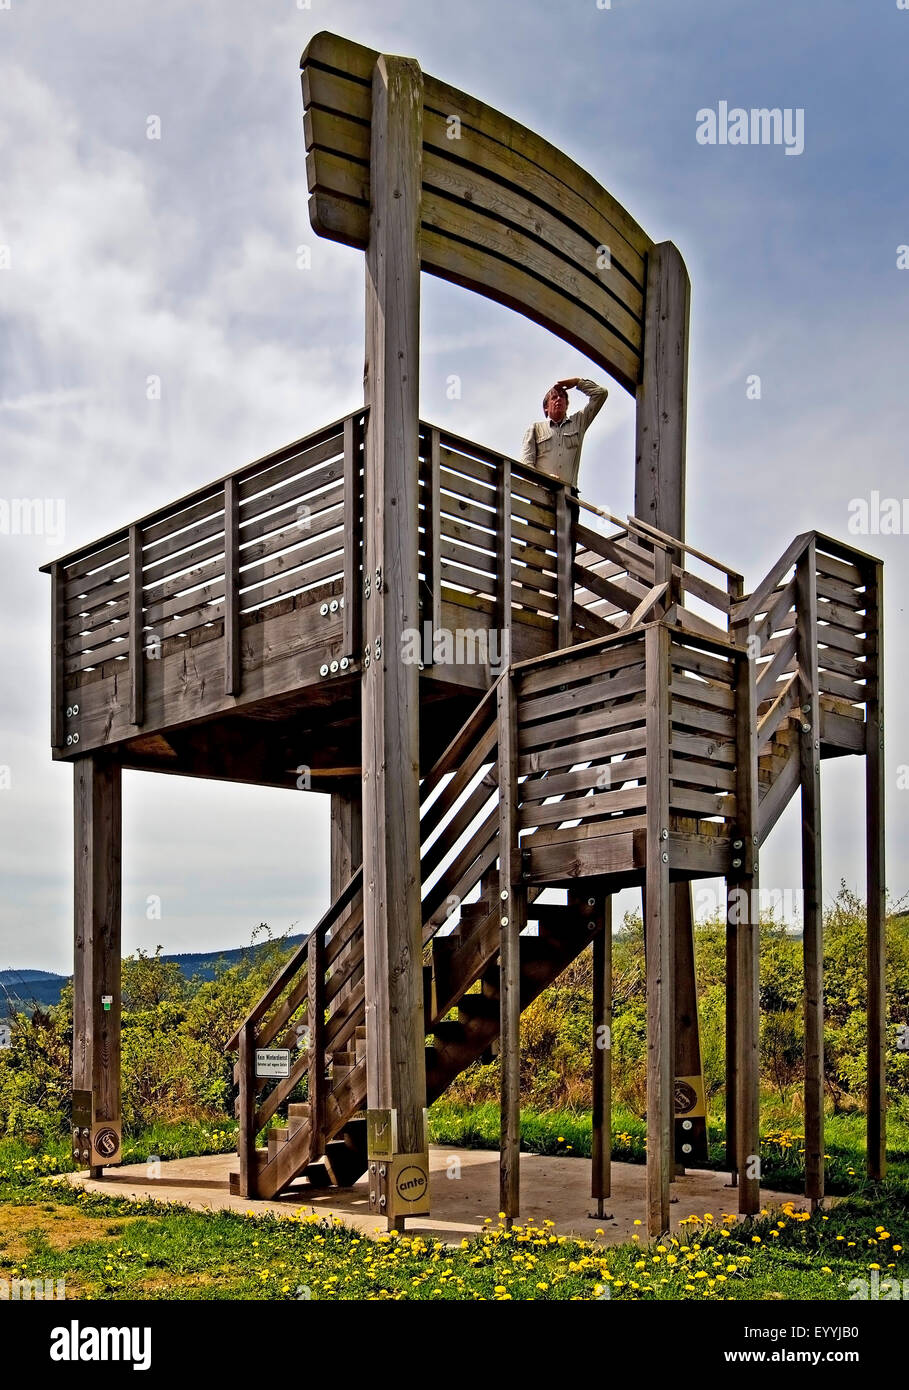 Sauerland-Stabil-Panorama-Stuhl, torre di osservazione nella forma di una sedia a Hoehenflug sentiero escursionistico sulla montagna Koenigsloh, in Germania, in Renania settentrionale-Vestfalia, Sauerland, Hallenberg Foto Stock